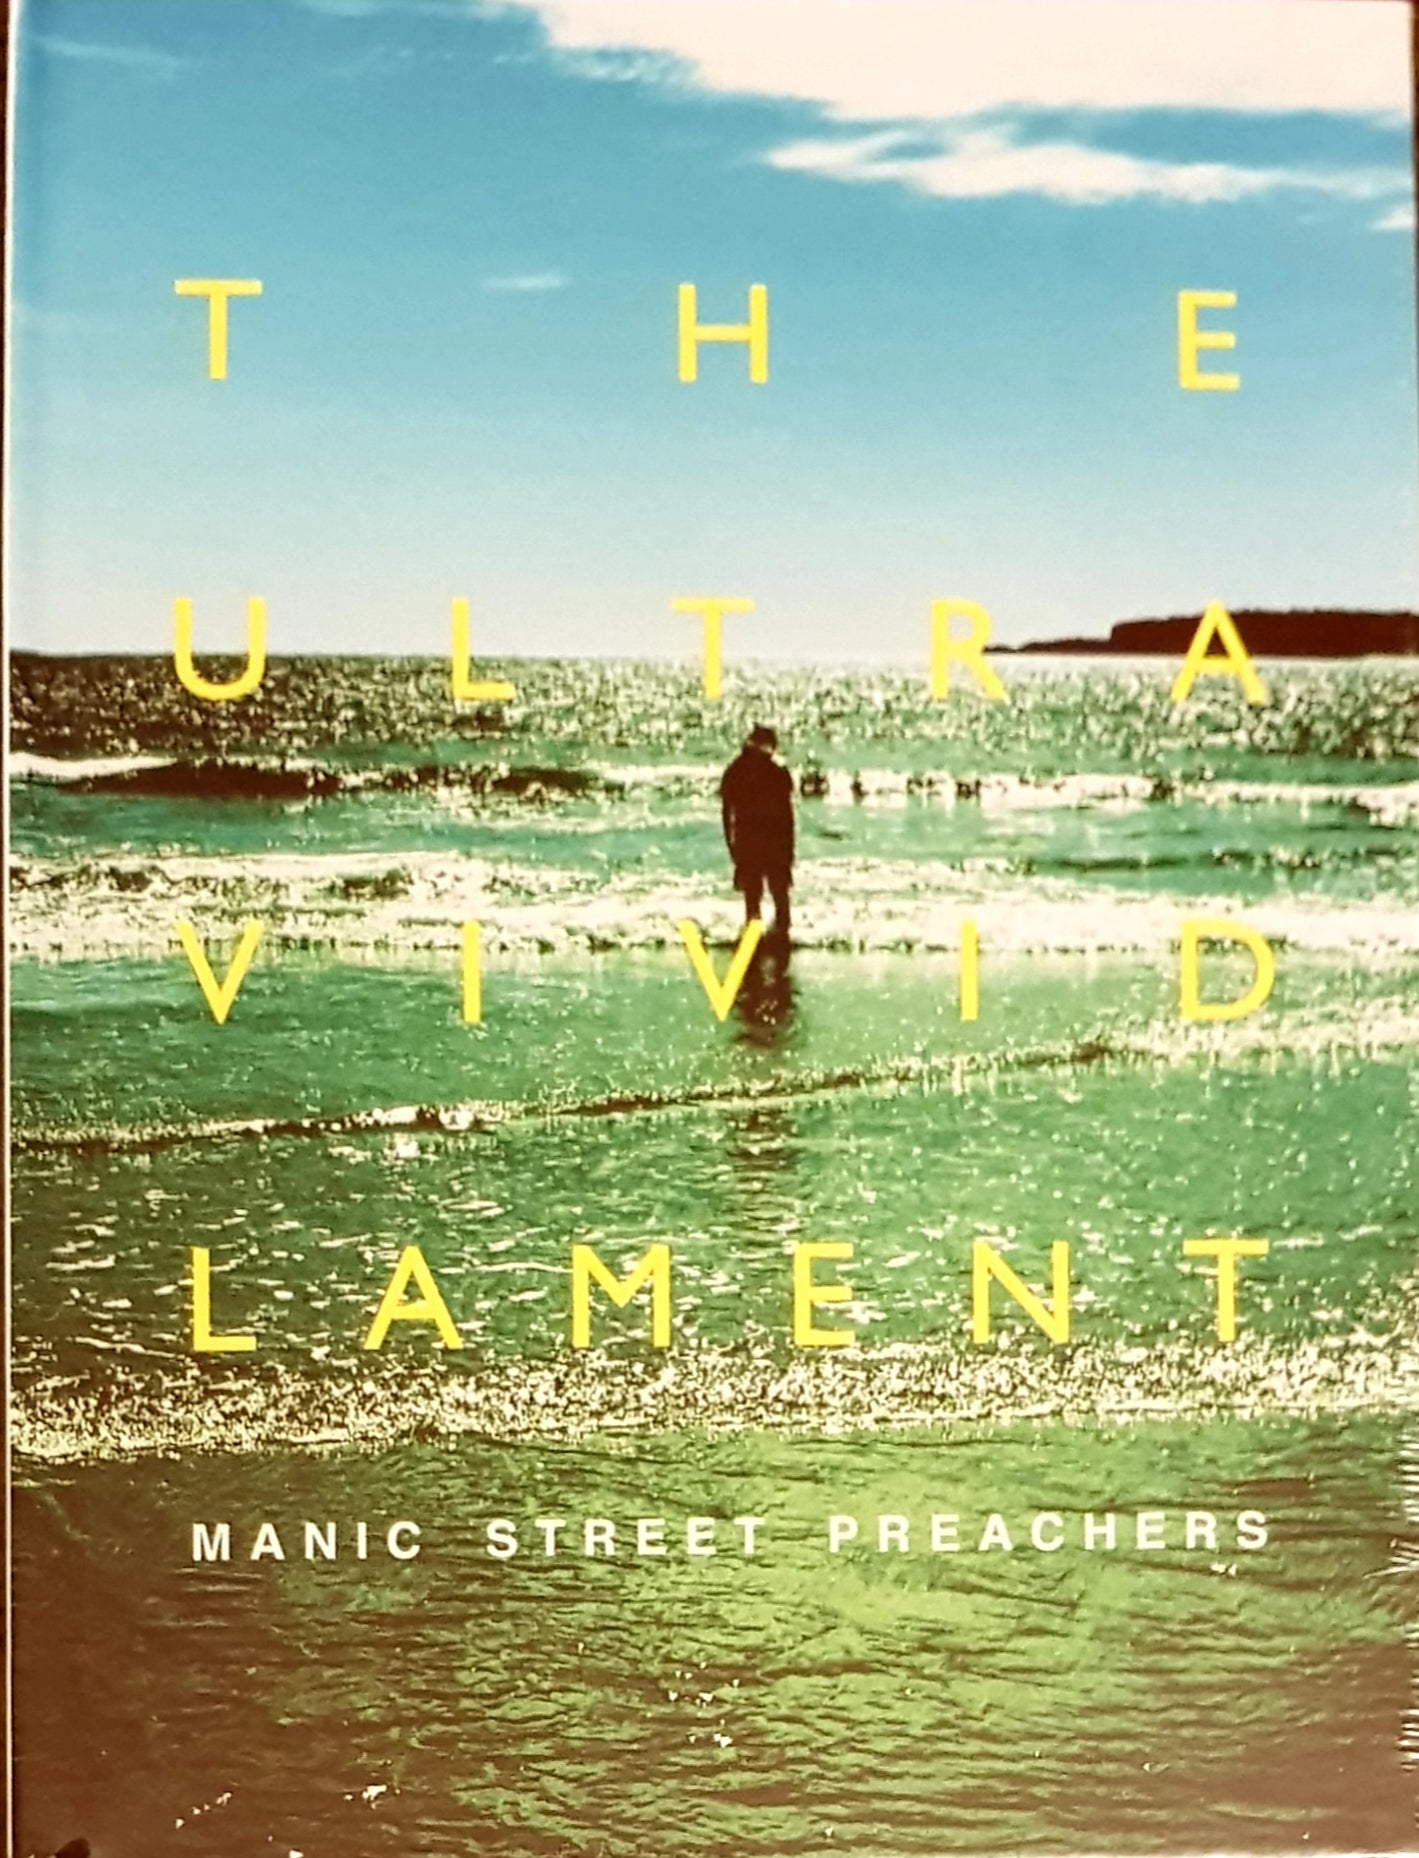 SIGNED Manic Street Preachers: The Ultra Vivid Lament - 2xCD dans une pochette cartonnée